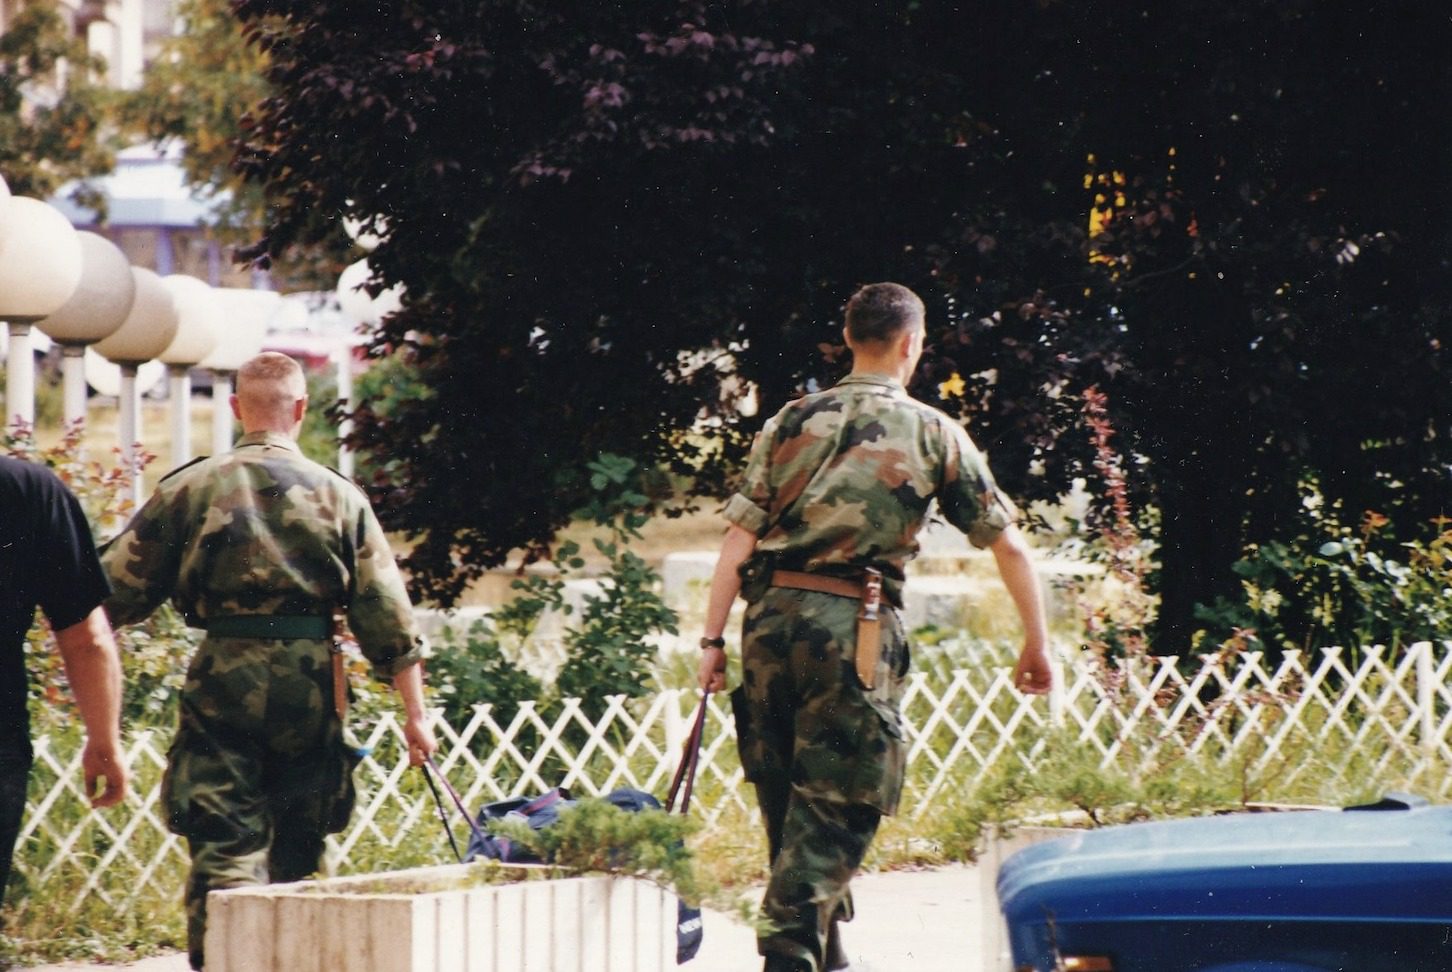 Momenti kur ushtarët serbë ikin nga Prishtina, publikohen fotografi të shkrepura ditën e çlirimit të Kosovës